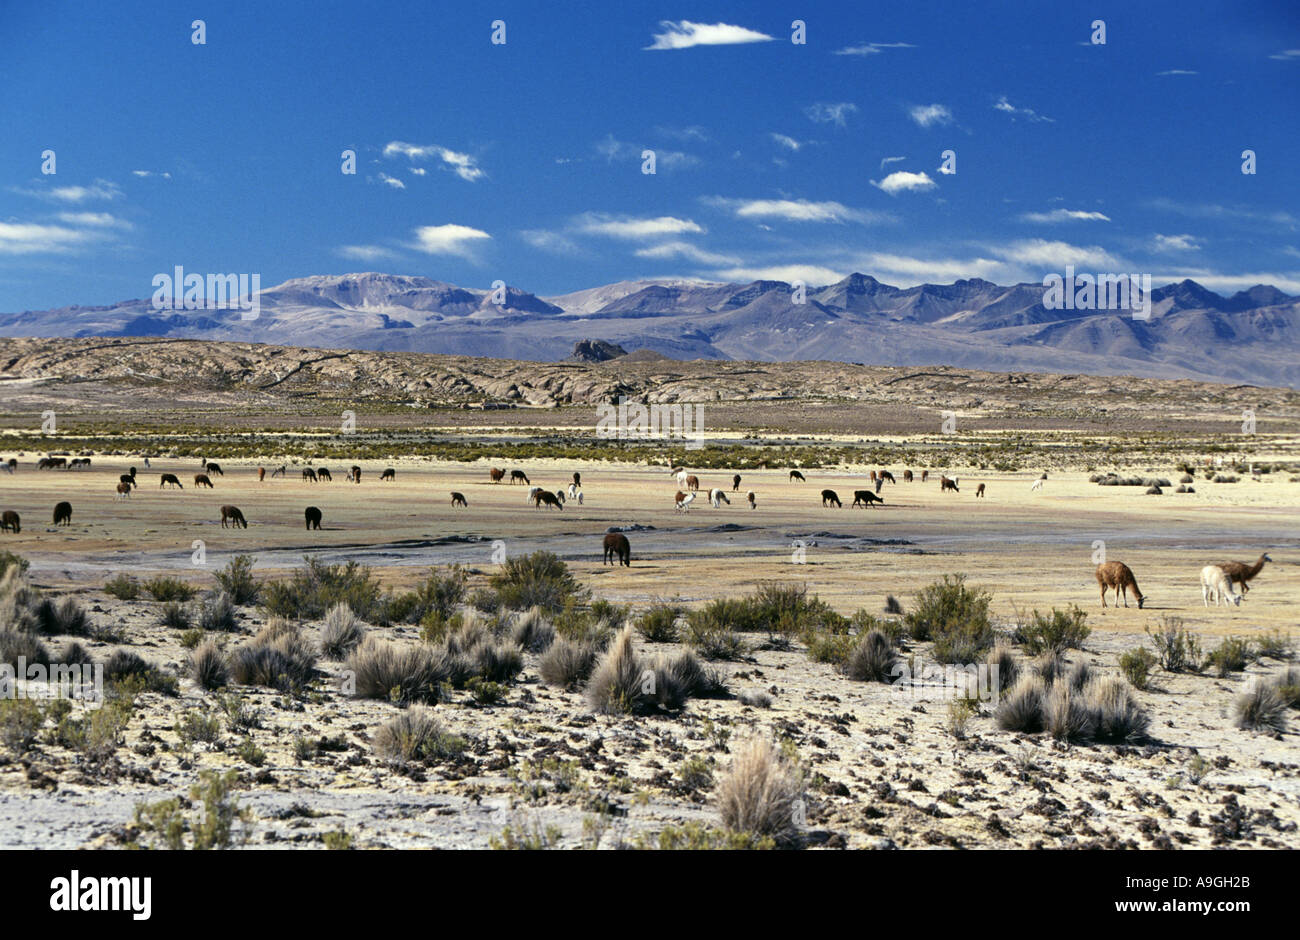 Le lama (Lama glama), le pâturage troupeau, la Bolivie, l'Altiplano, le parc national de Sajama. Banque D'Images